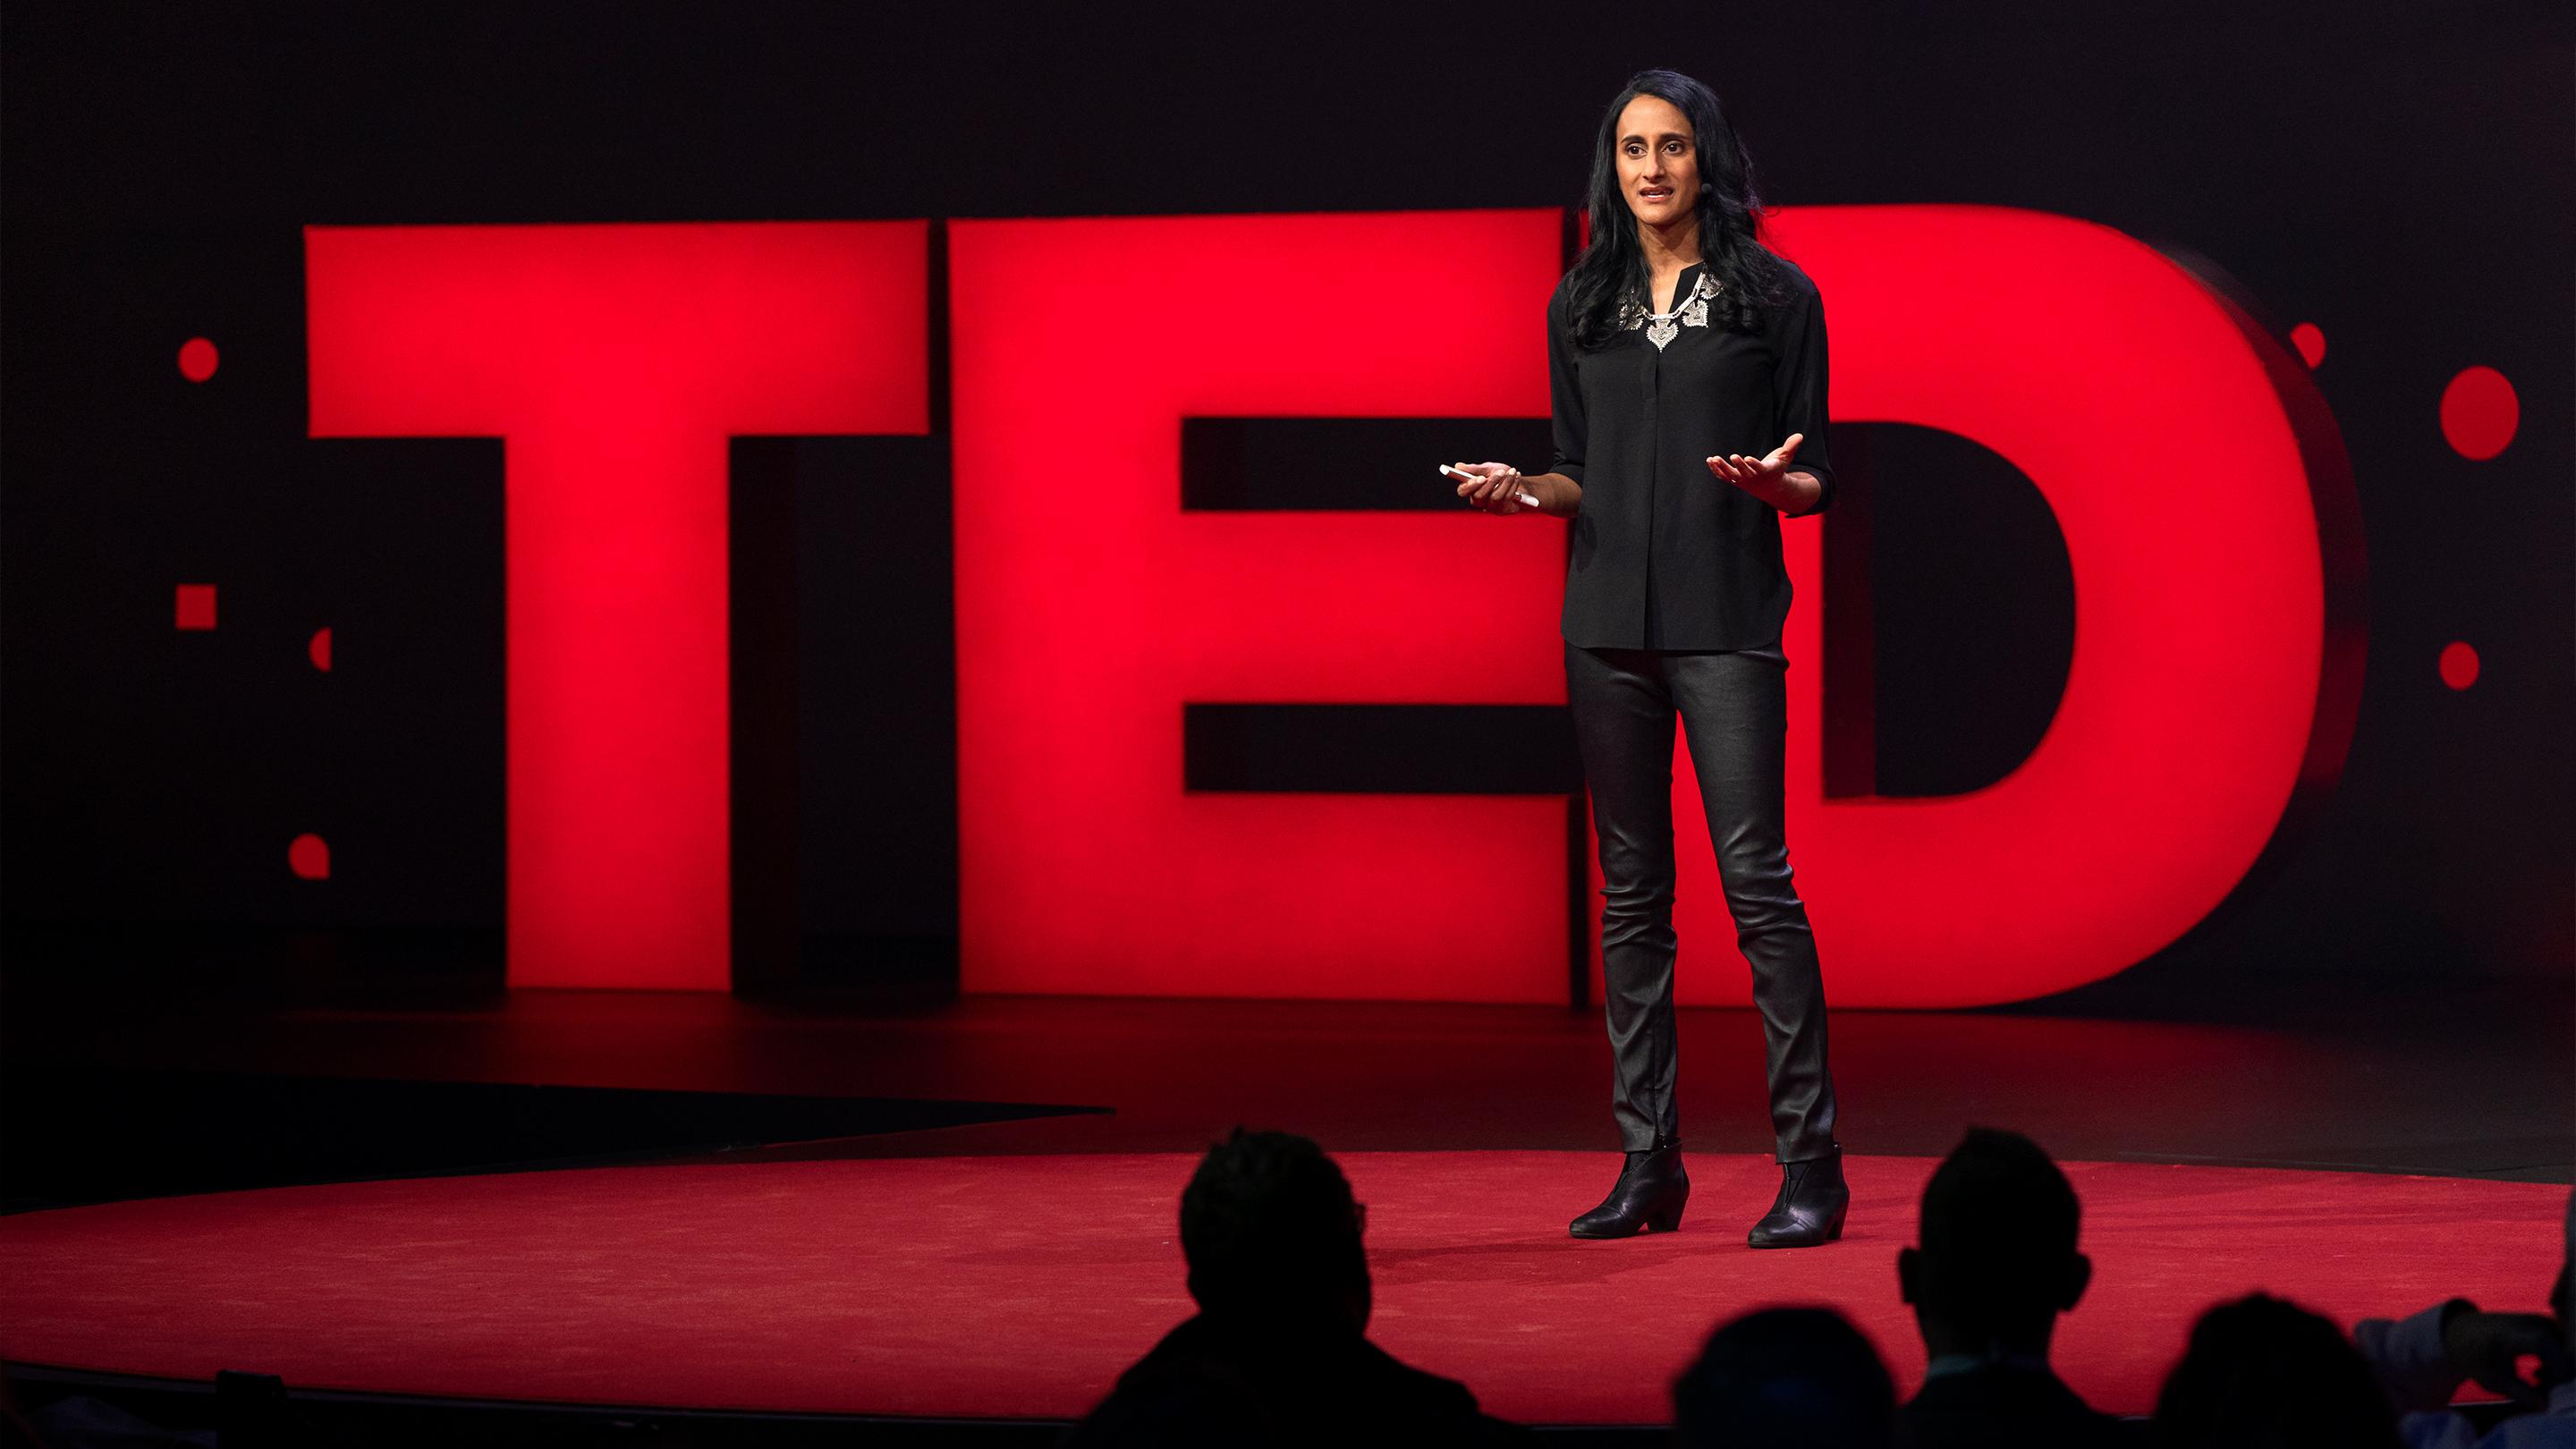 O poder de pensar no futuro em uma era imprudente | Bina Venkataraman